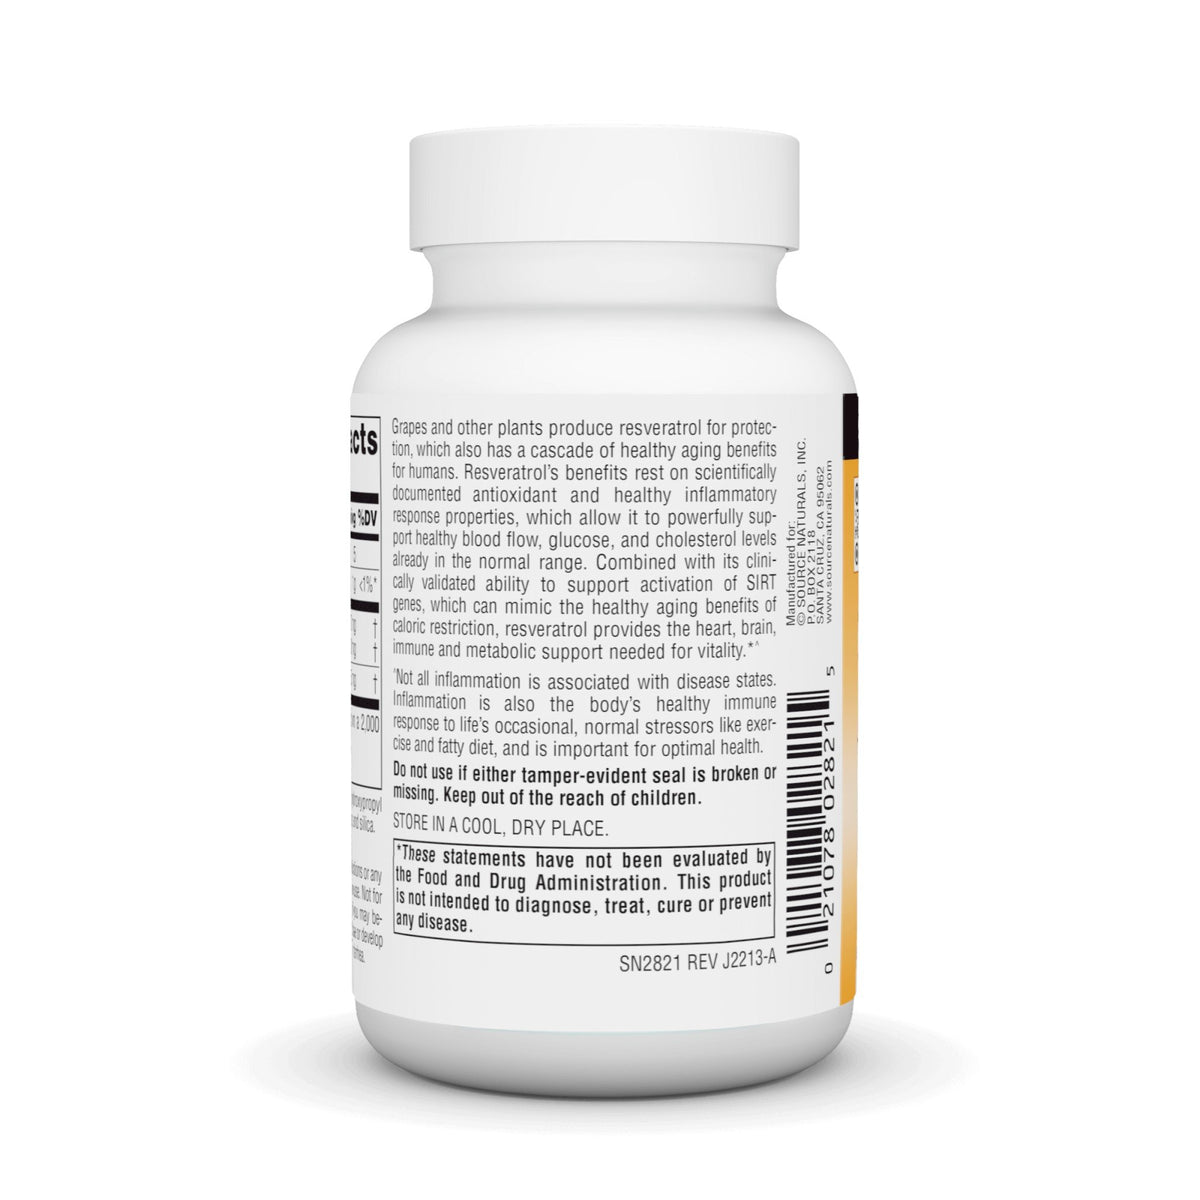 Source Naturals, Inc. Resveratrol 500 500 mg 30 Tablet